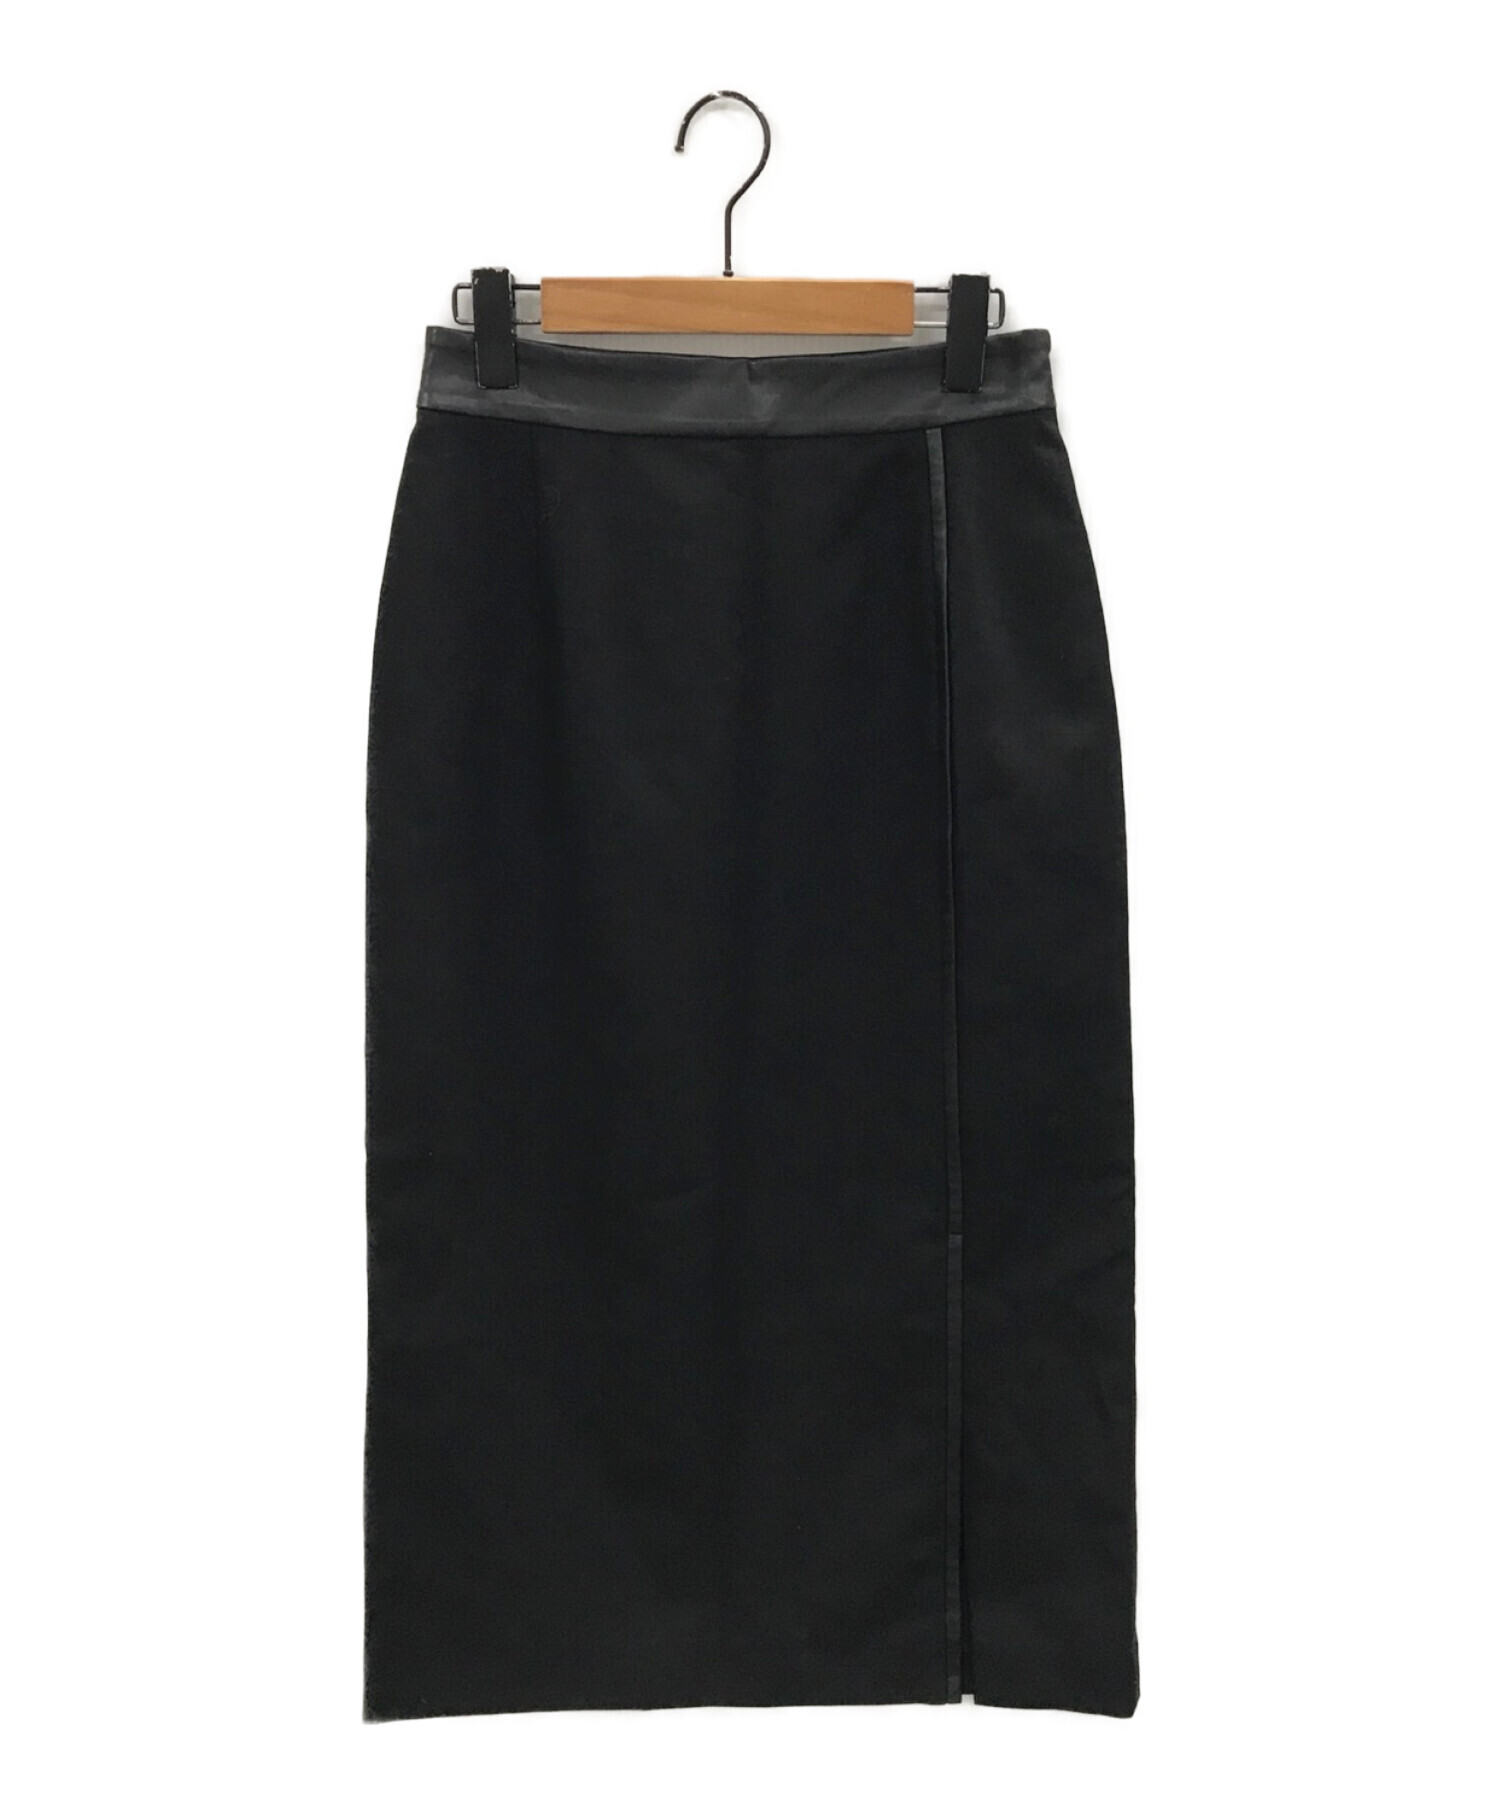 ADORE (アドーア) 麻混オックスパイピングタイトスカート ブラック サイズ:36